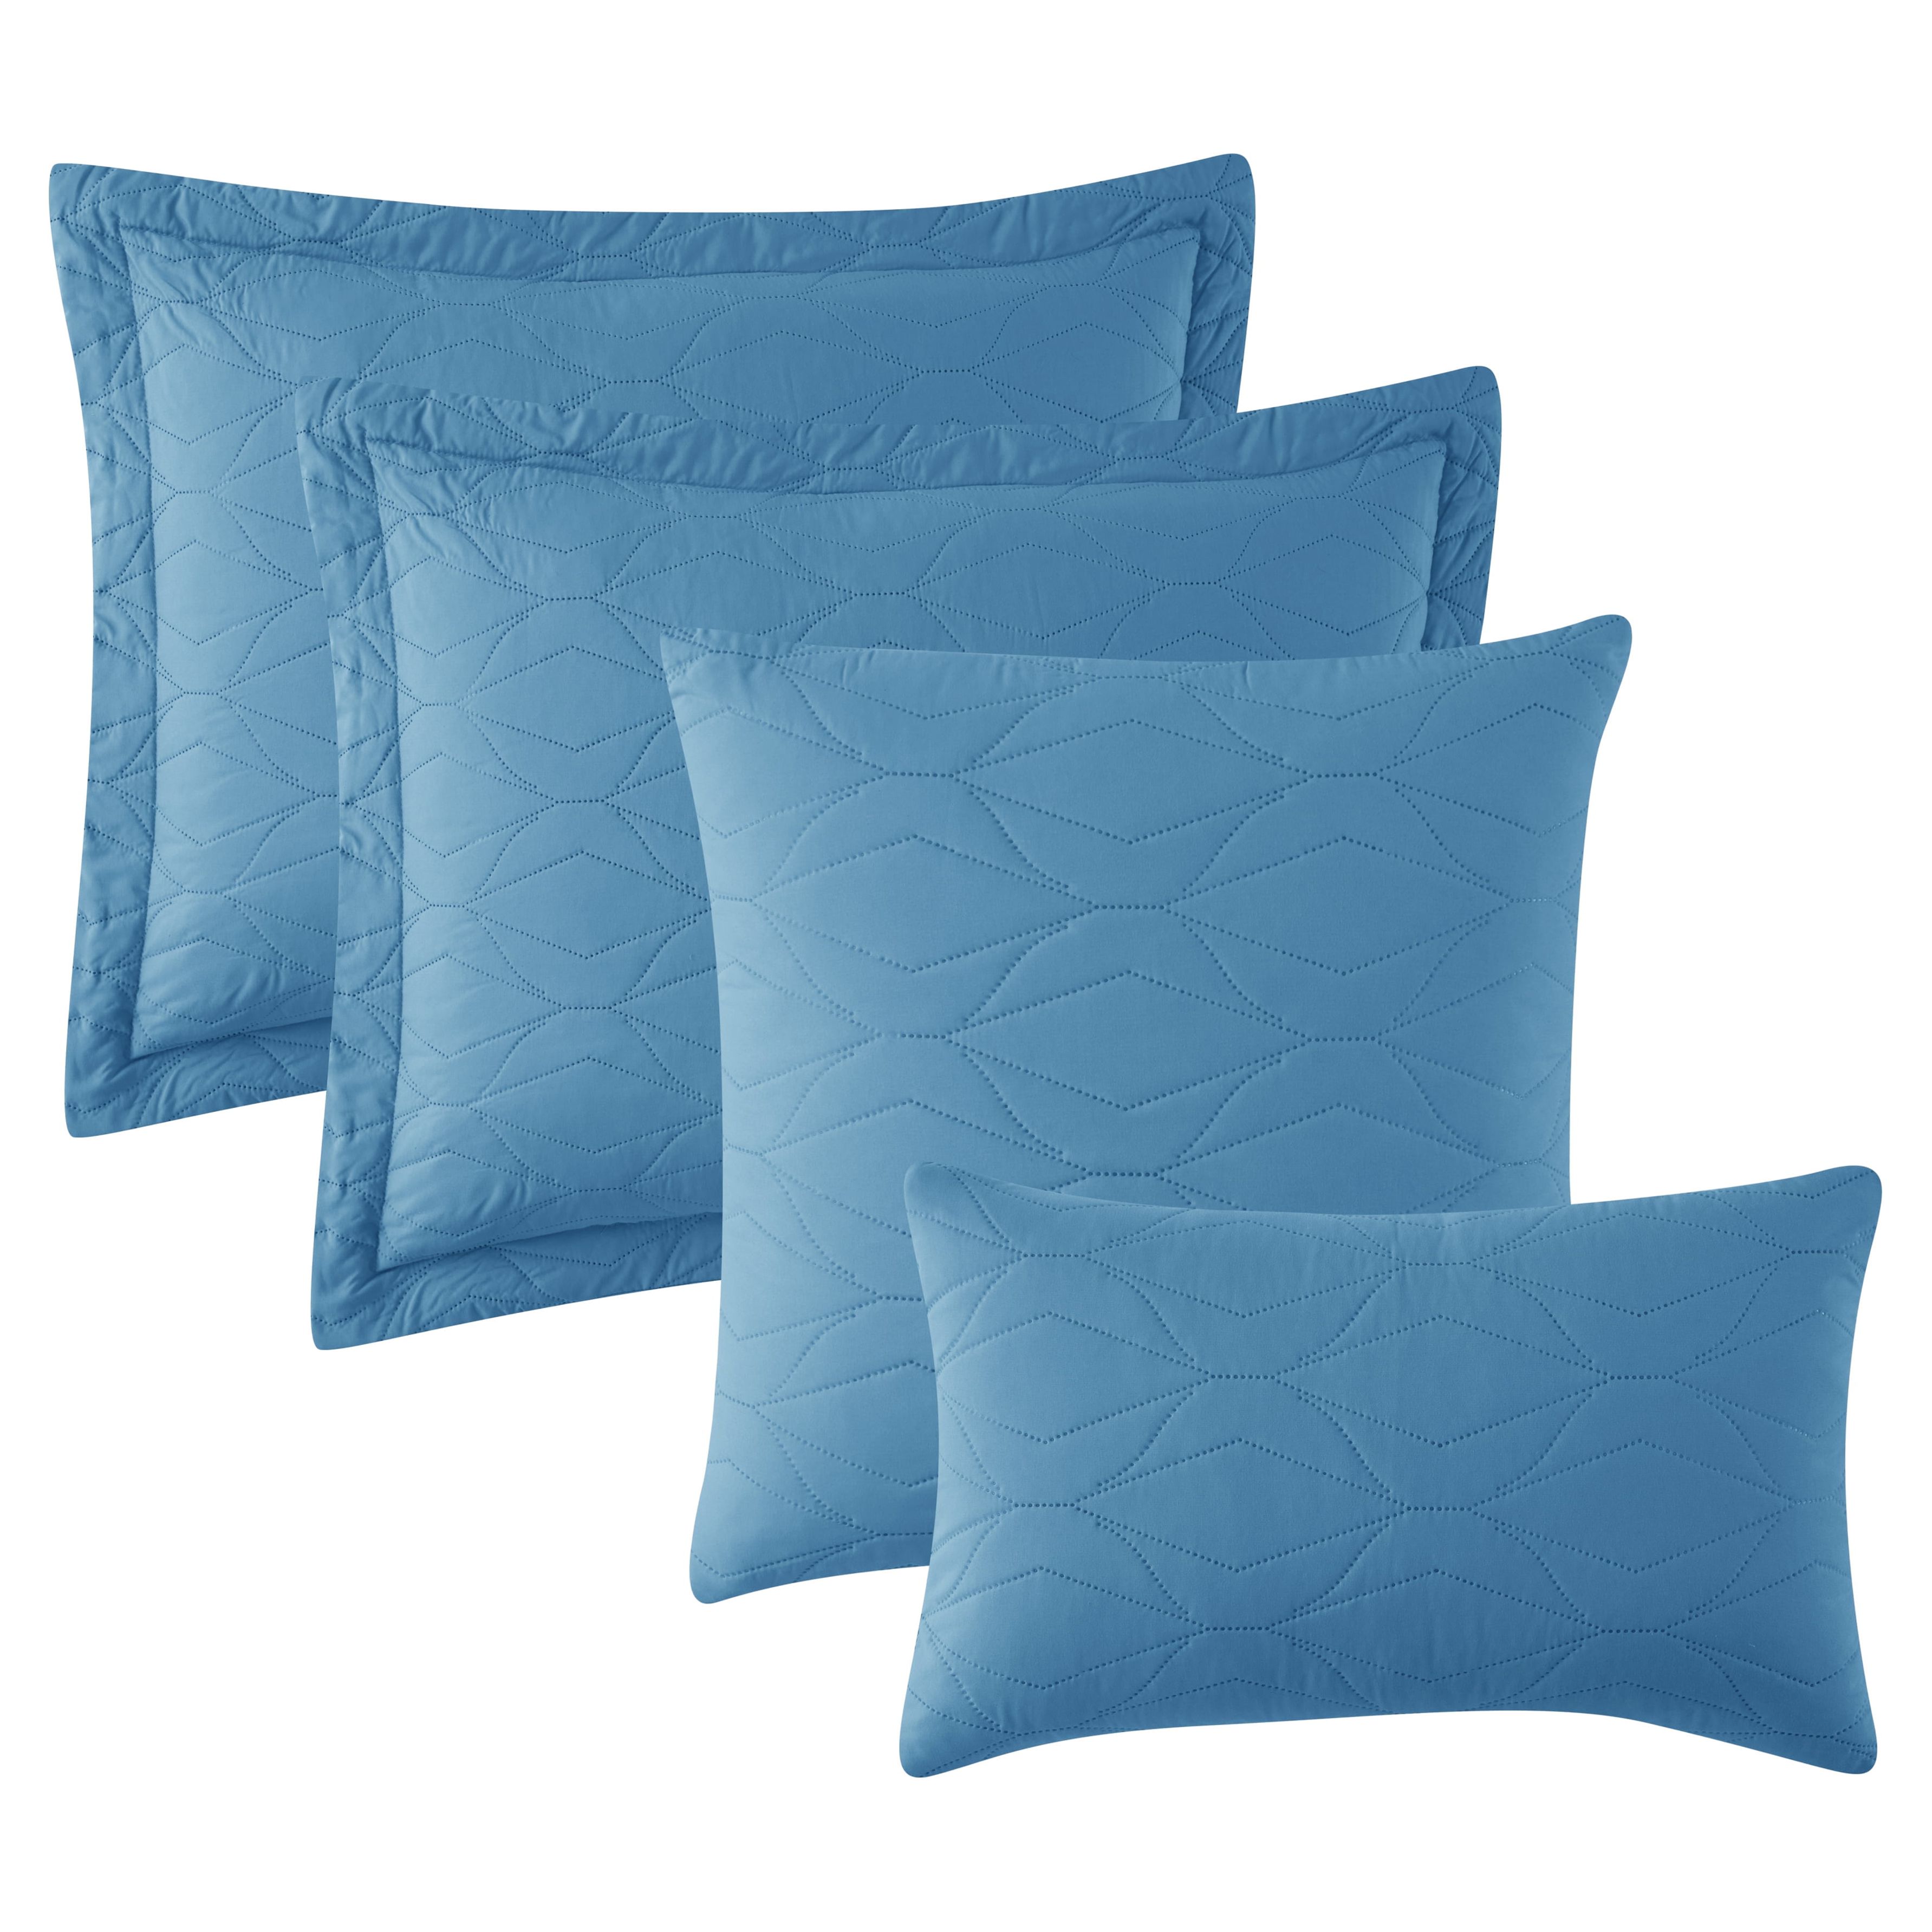 Clara Clark Quilt Set Queen Bedspread, 5-Piece Ellipse Weave Lightweight Coverlet, Blue Heaven - image 4 of 5